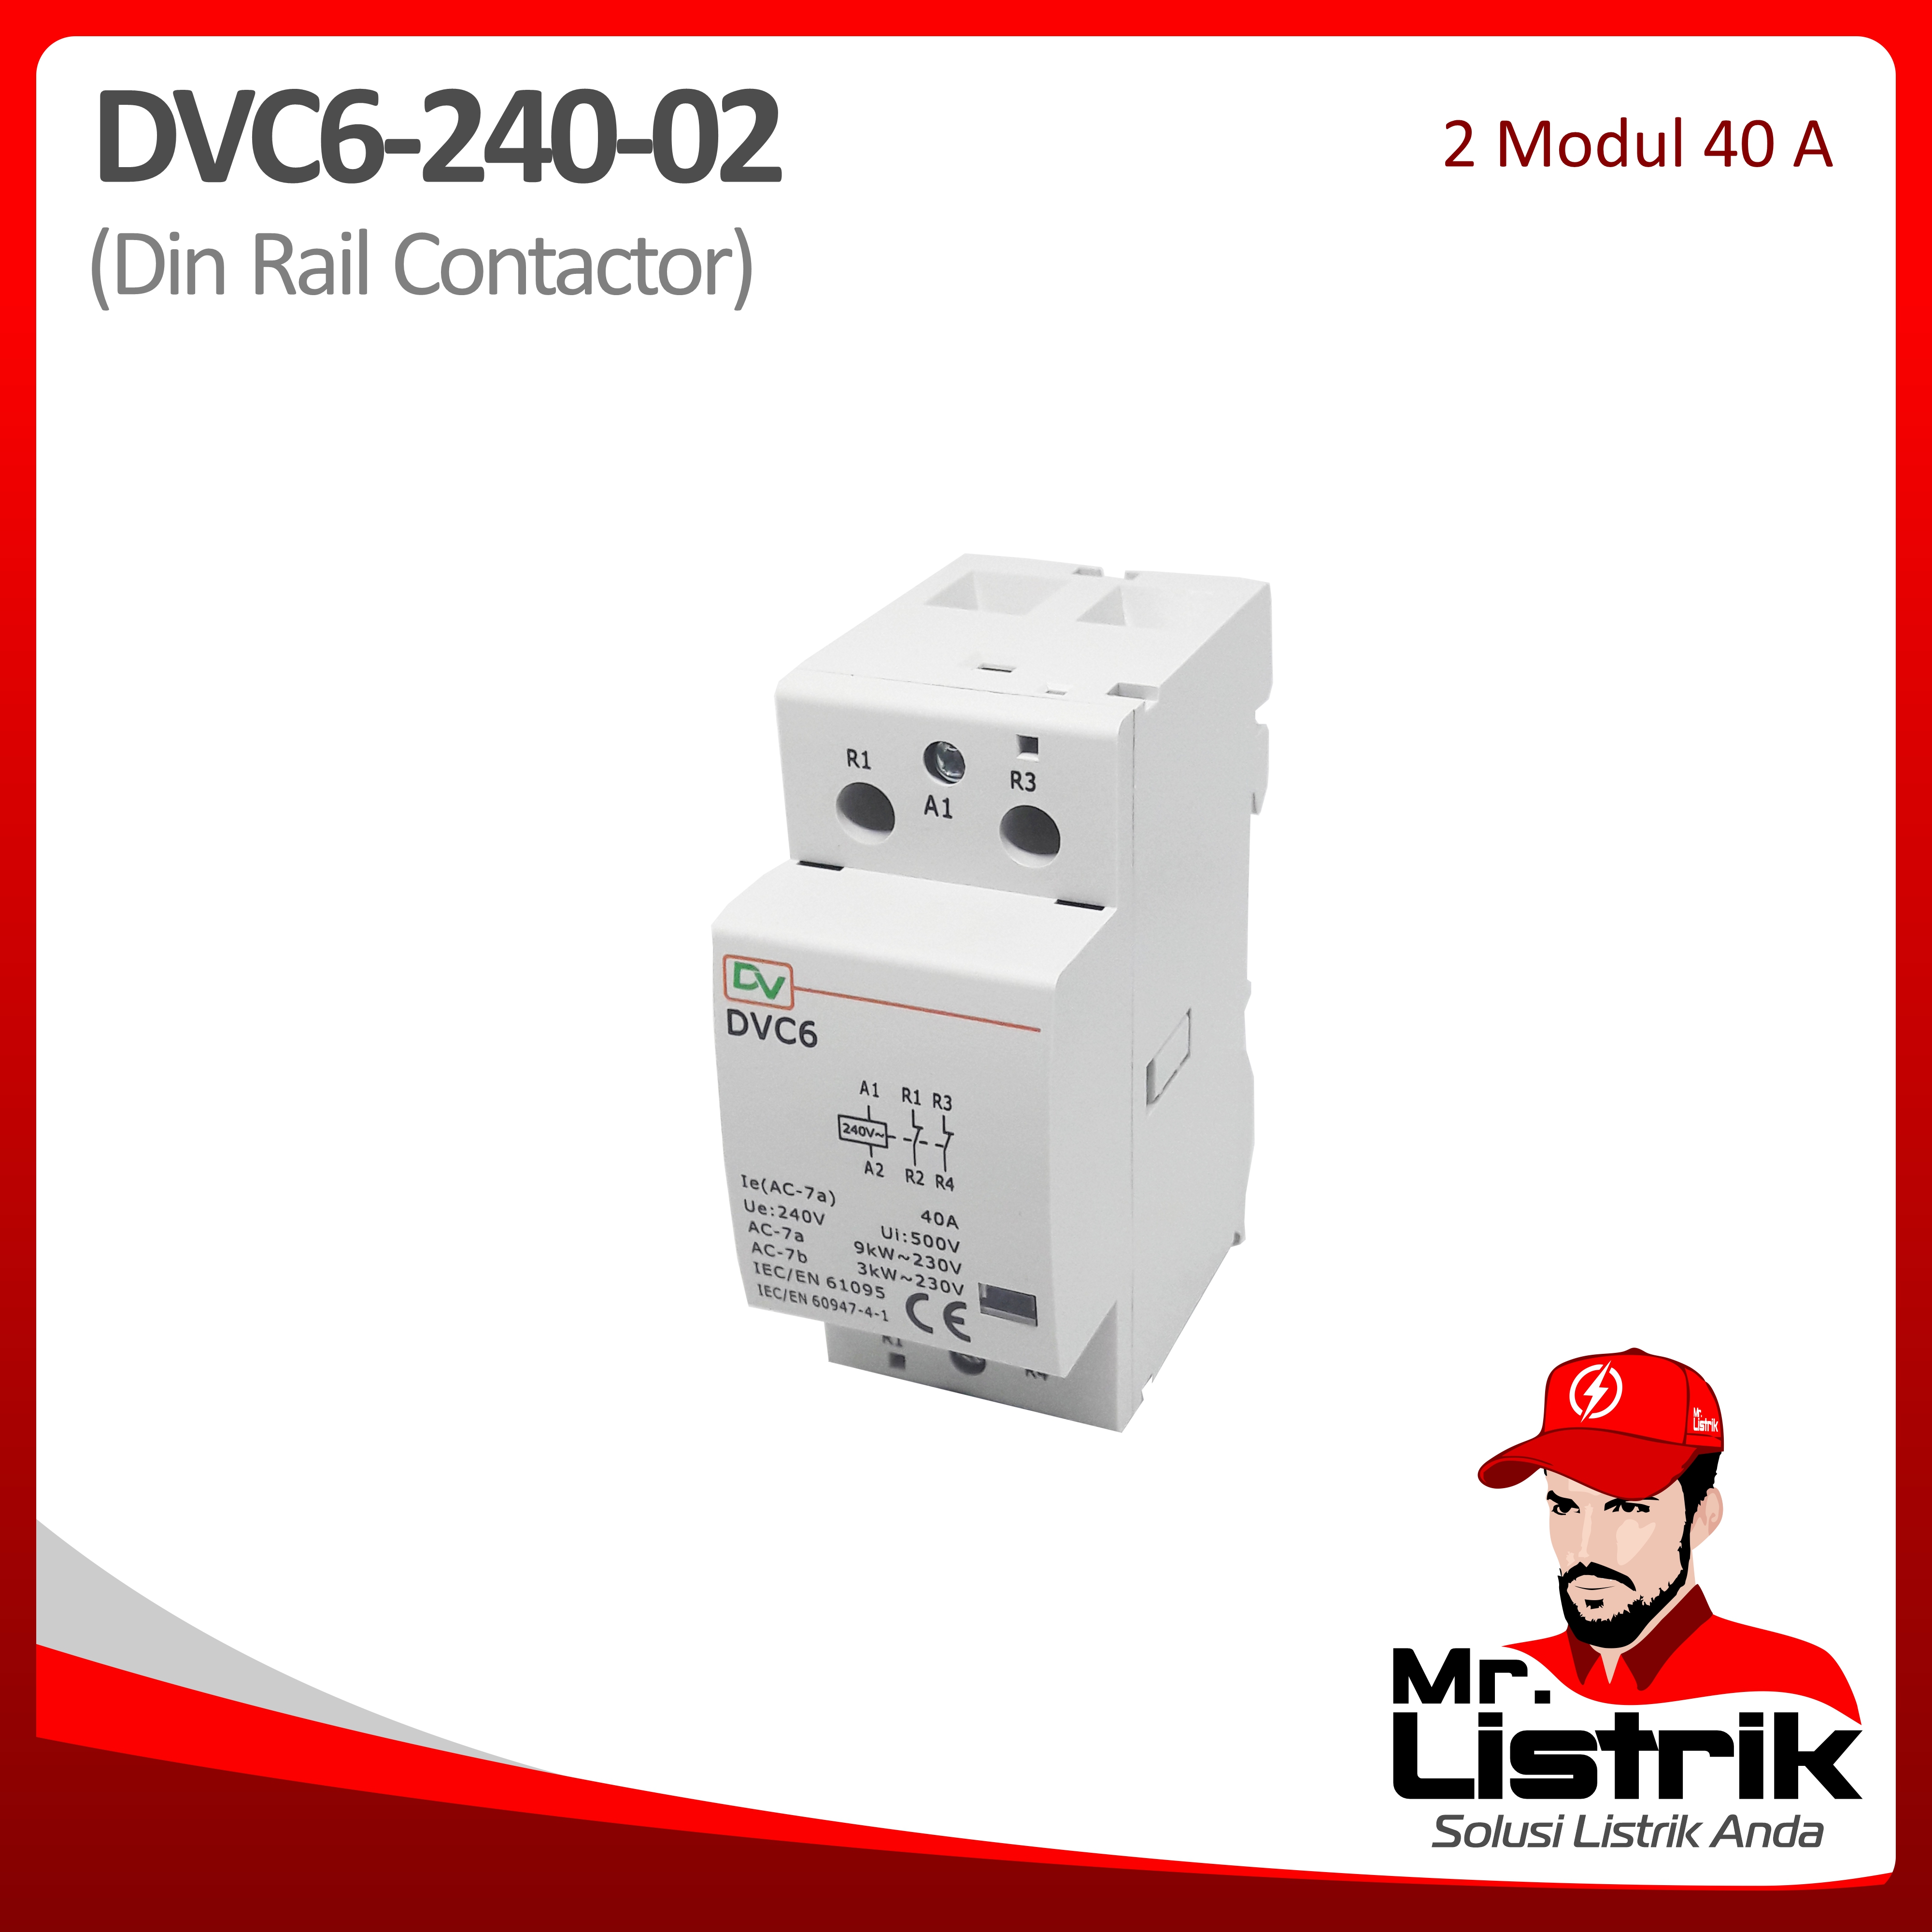 Din Rail Contactor 2 Modul 40A 2NC DVC6-240-02